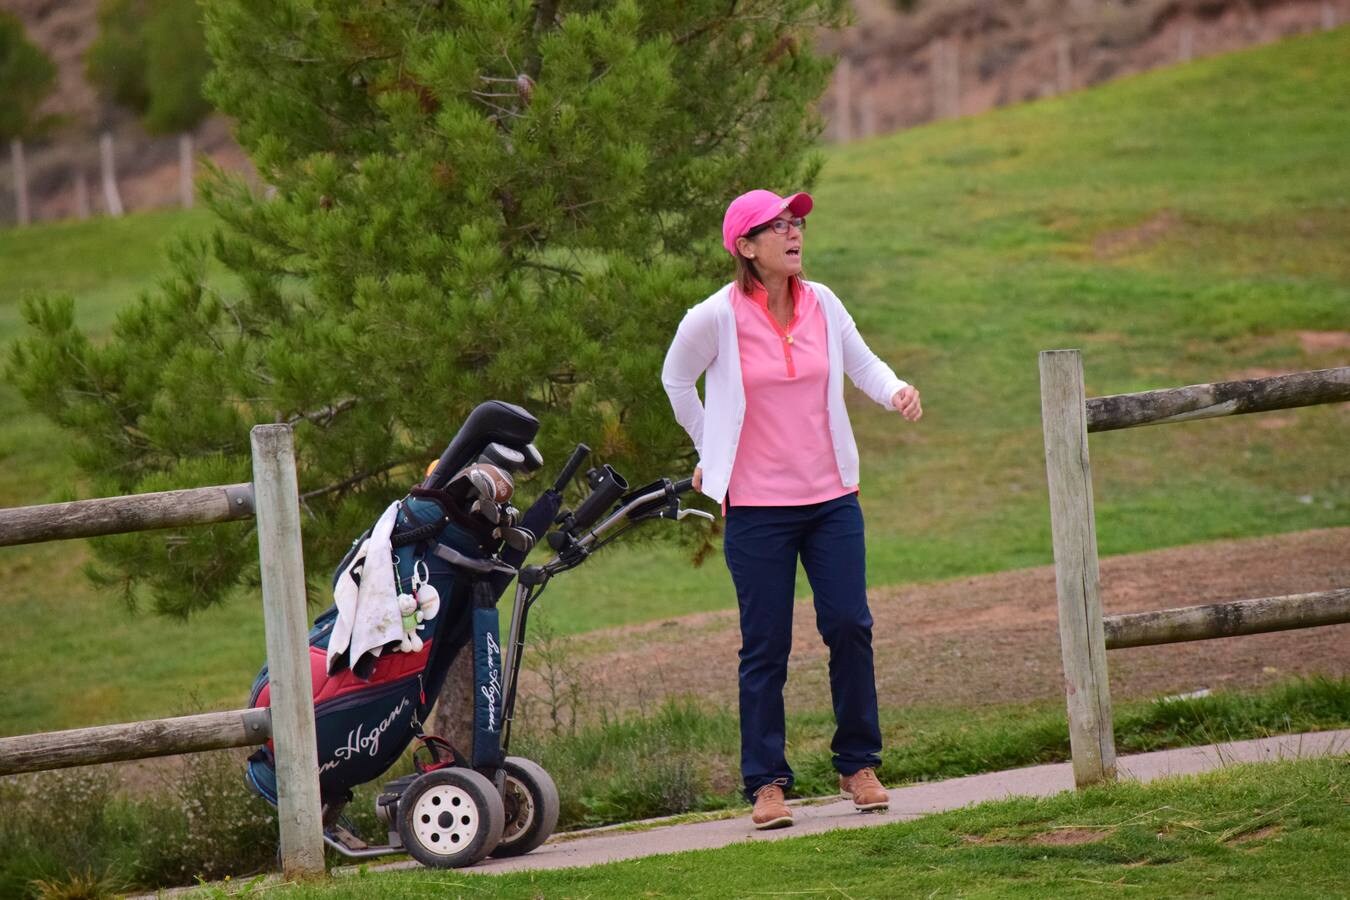 Los participantes en el torneo disfrutaron de una gran jornada de golf.